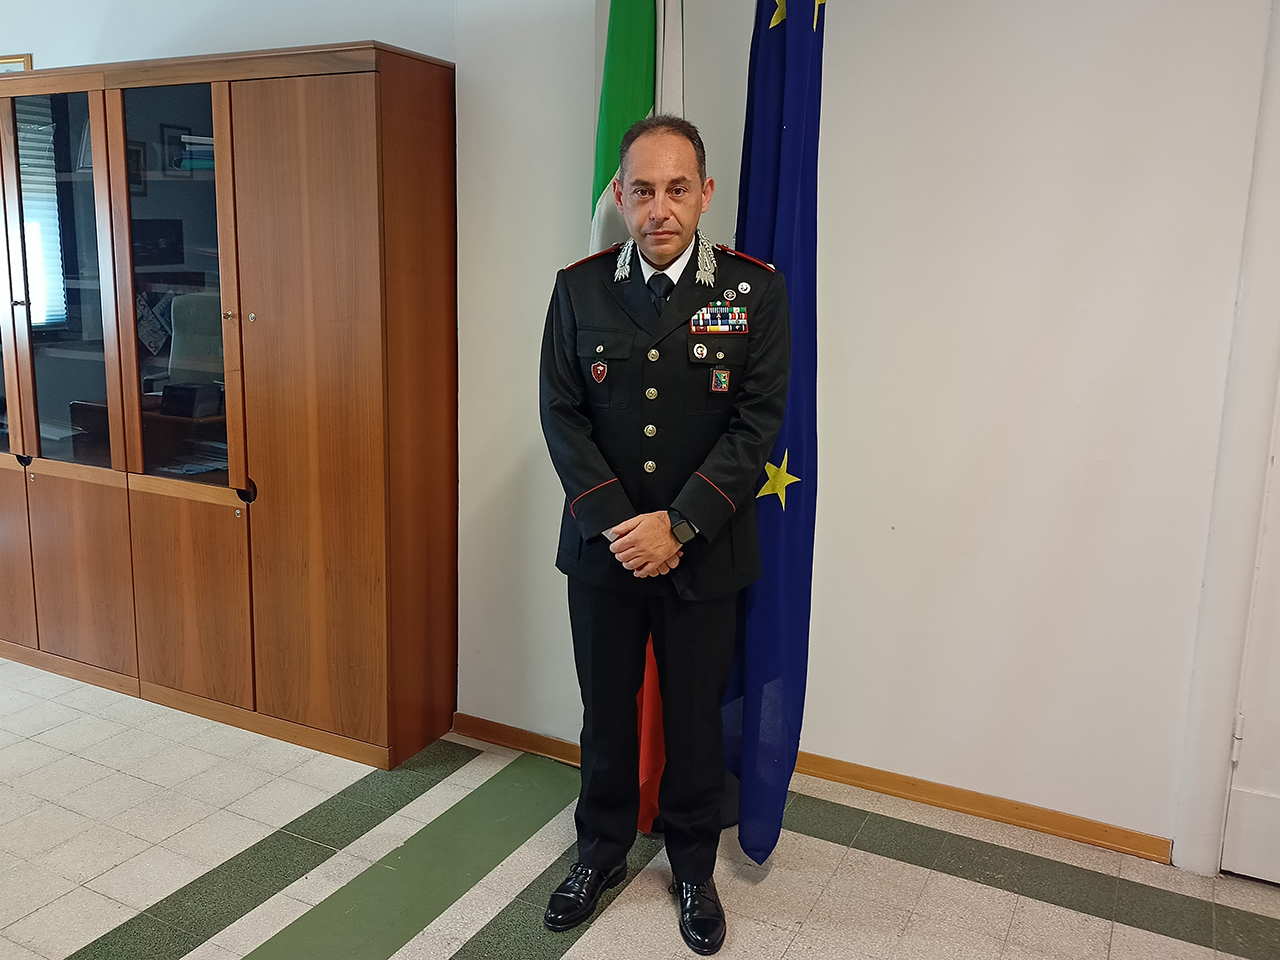 Il S.Ten. Michele Ridente è il nuovo comandante del nucleo operativo radiomobile (Norm) della Compagnia Carabinieri di Senigallia